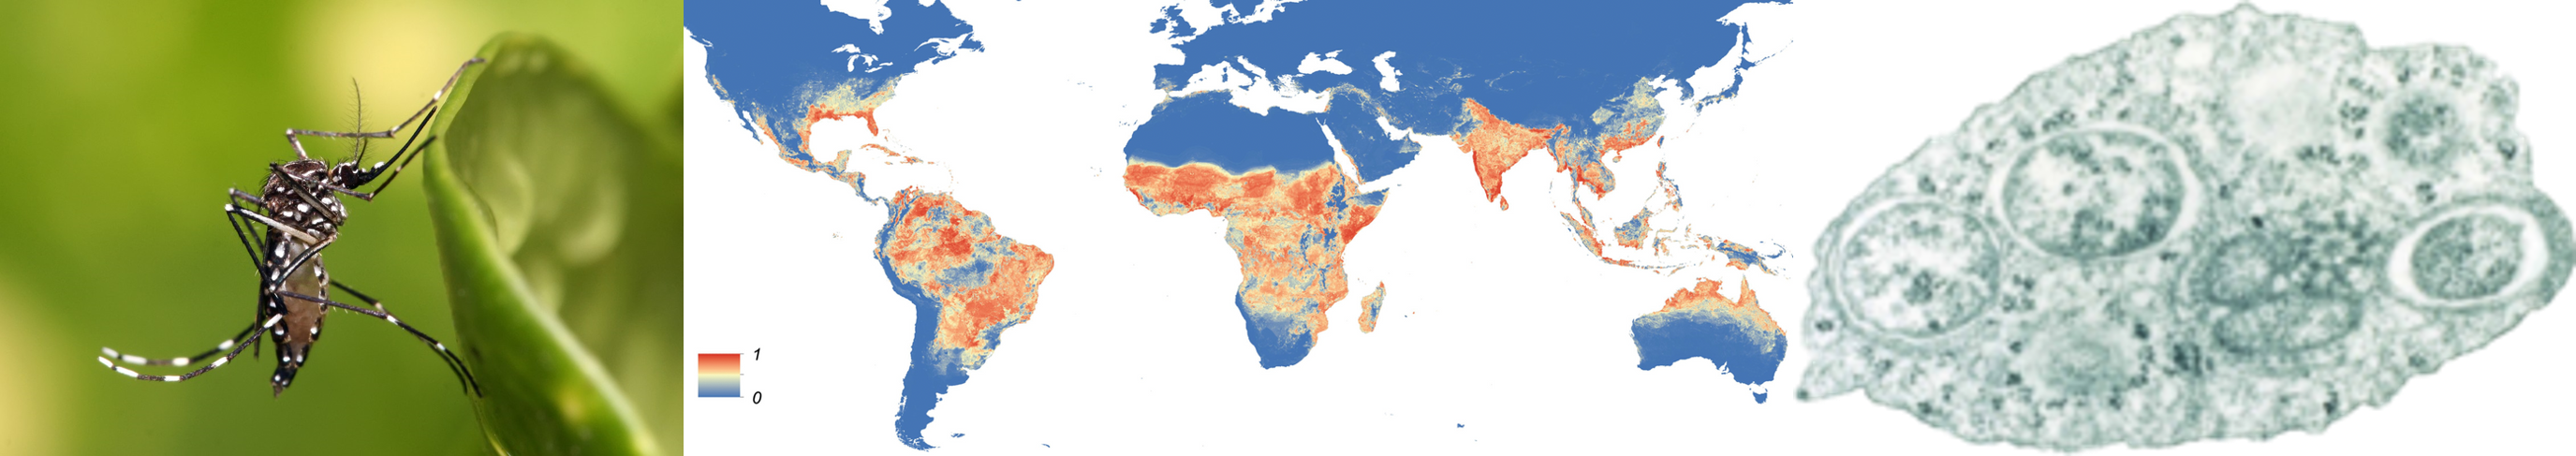 (왼쪽) 이집트모기의 모습입니다. Wikimedia Commons/Muhammad Mahdi Karim, Aedes aegypti.jpg, GFDL 1.2 (가운데) 이집트모기의 분포도입니다. 붉은색에 가까울수록 모기가 많이 사는 곳이에요. eLife 2015;4:e08347, Public Domain (오른쪽) 볼바키아 박테리아의 현미경 사진입니다. PLoS Biol 2(3): e76, CC BY 2.5